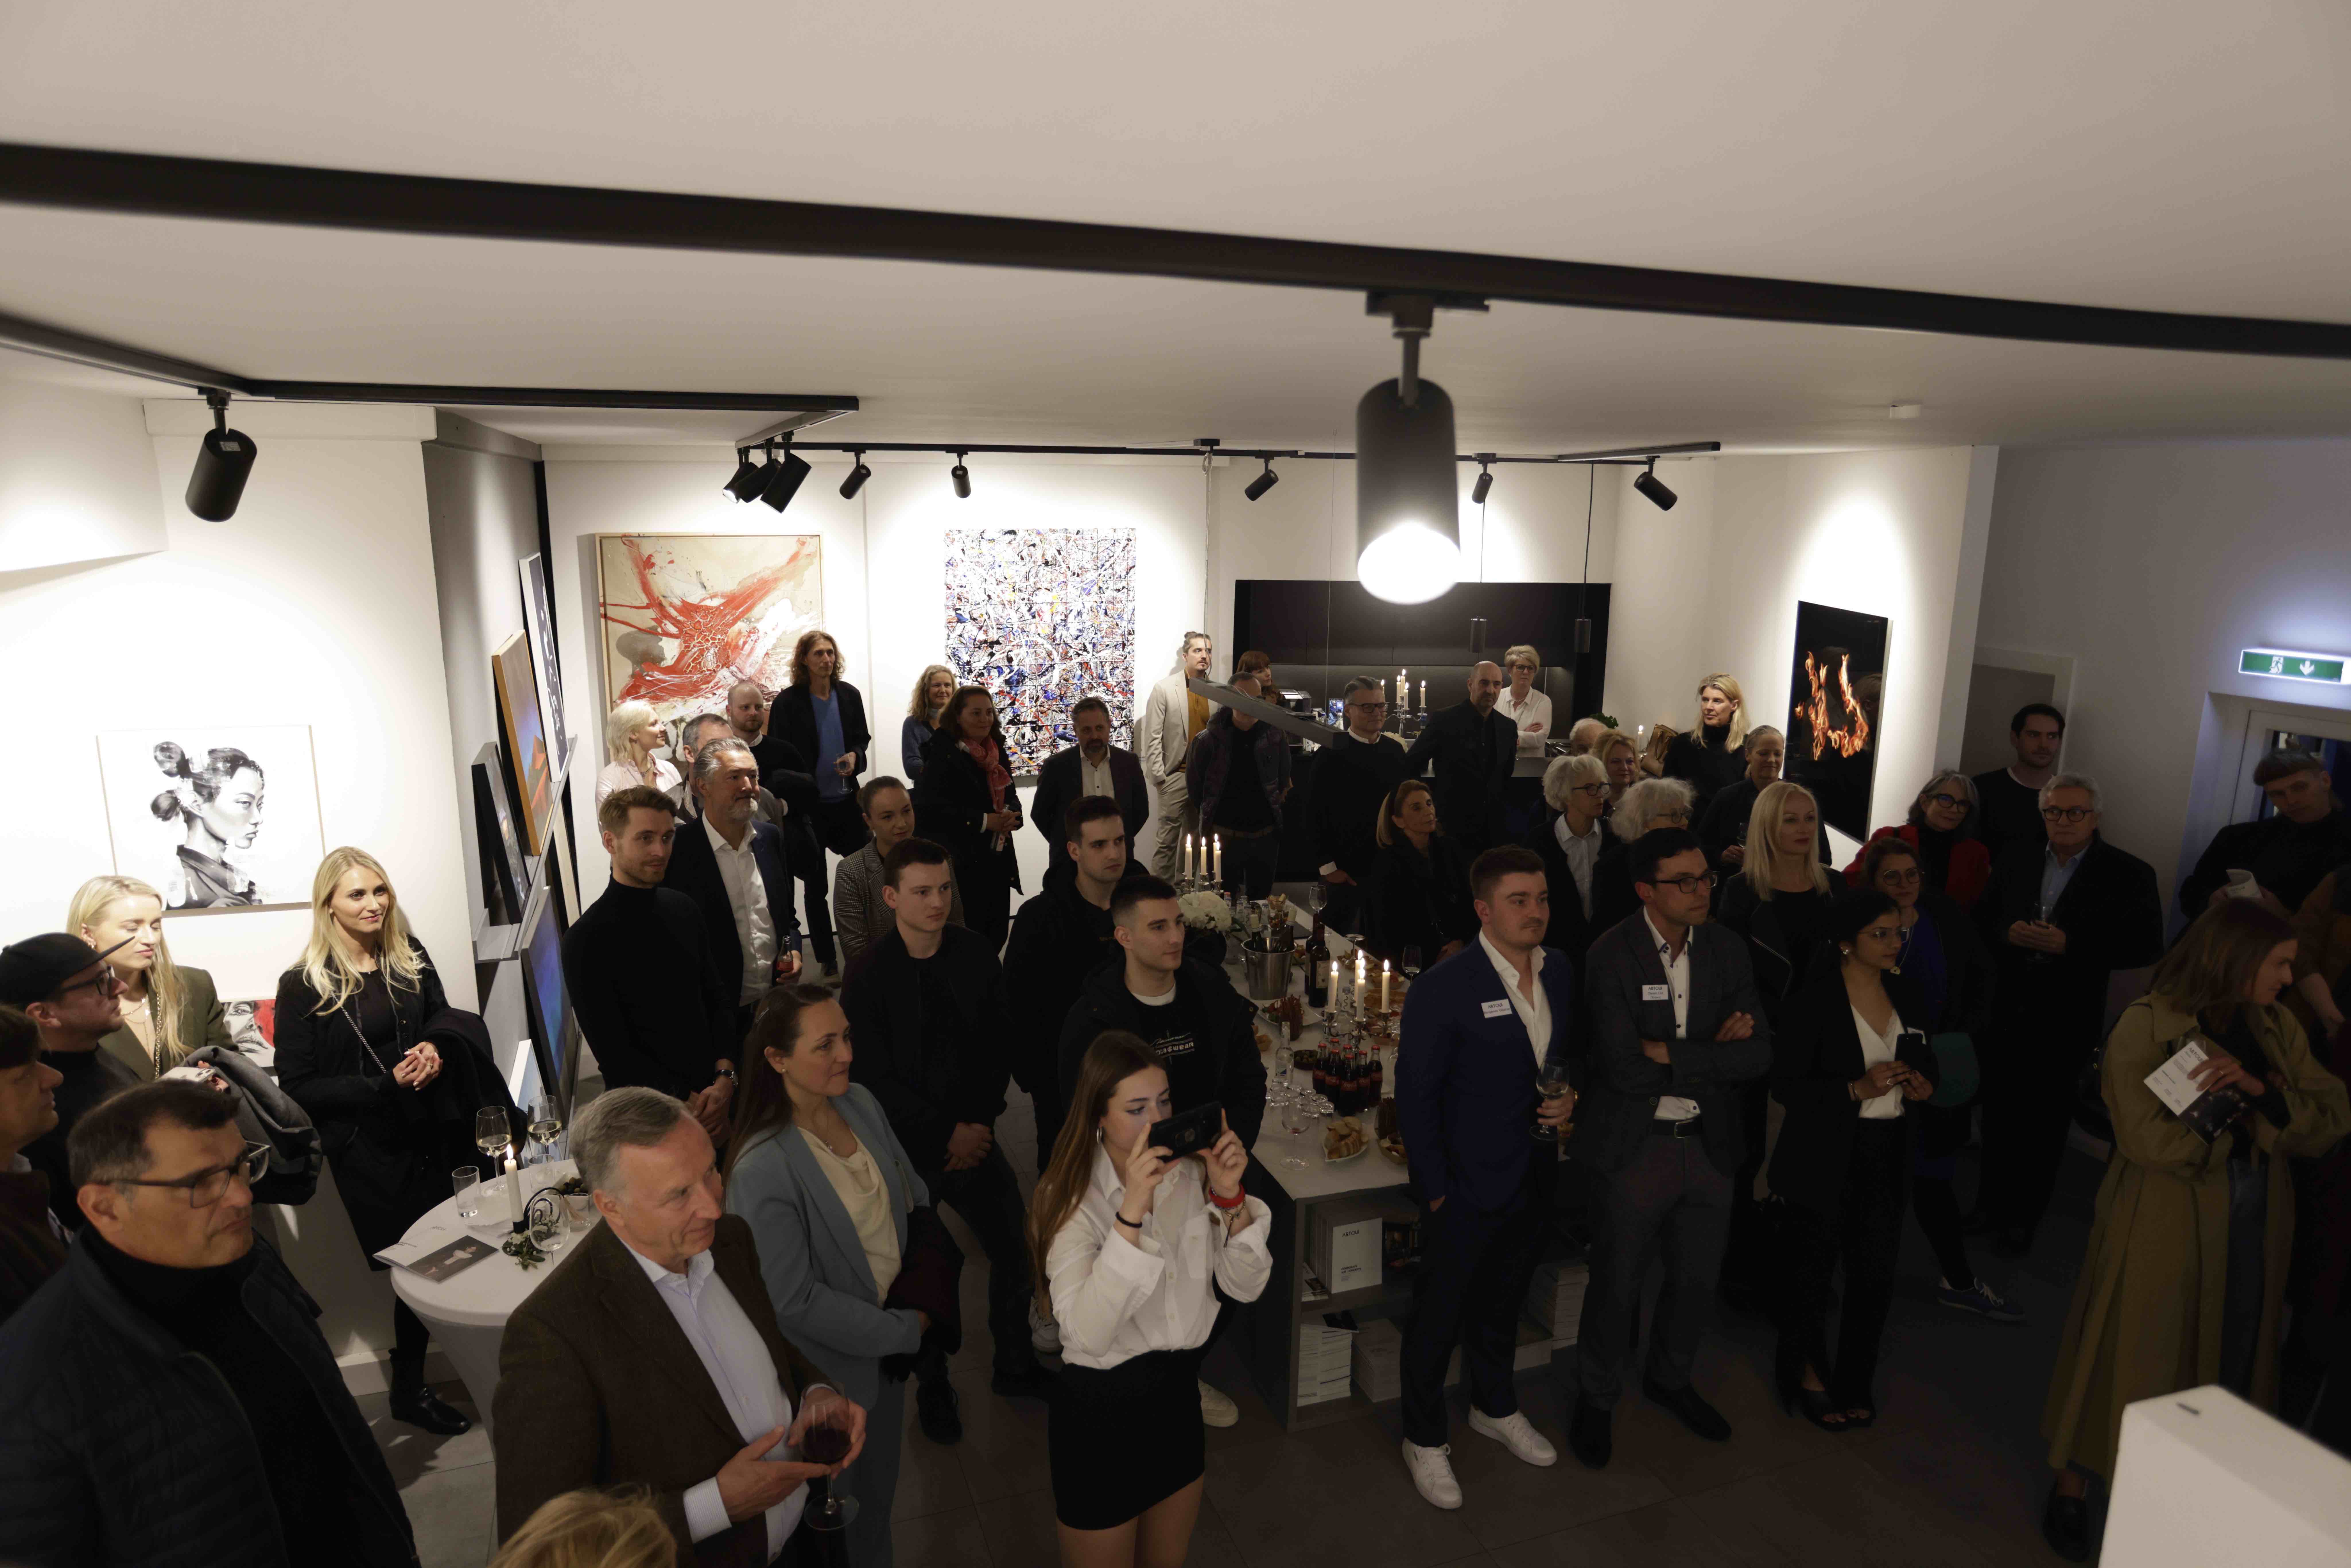 ARTOUI launches the 'Home of Unique Art